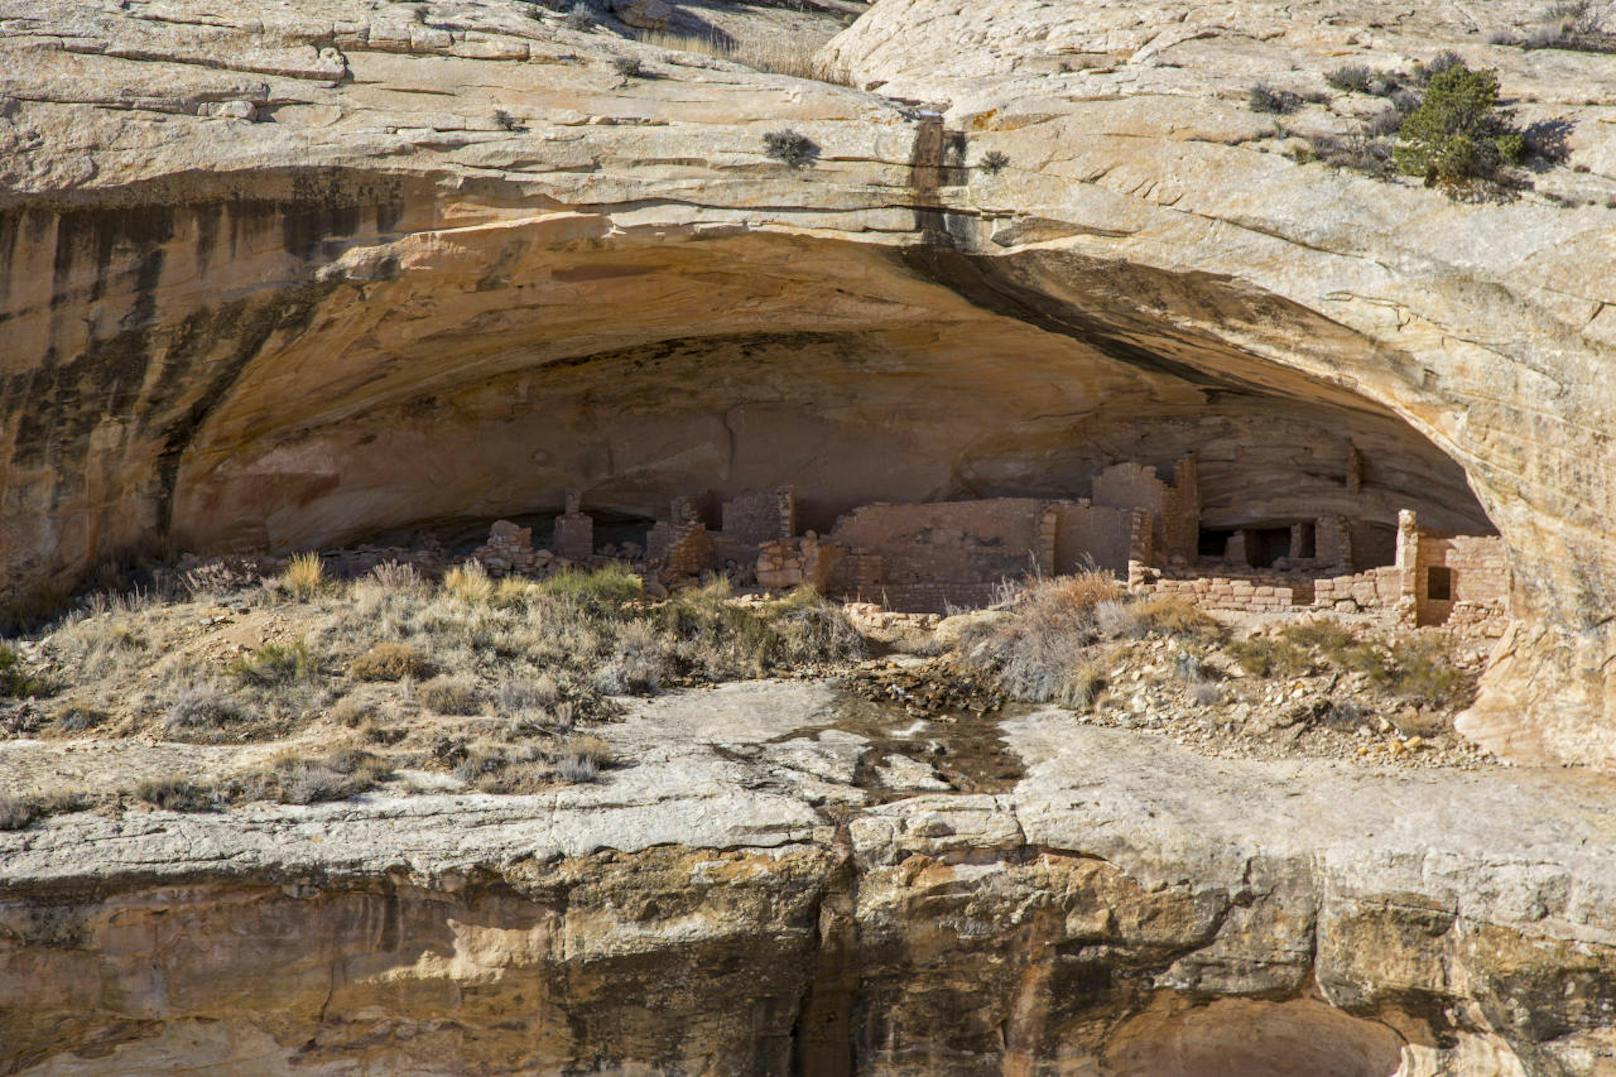 Zahlreiche Organisationen haben bereits rechtliche Schritte gegen Trumps Entscheidung, die von Innenminister Ryan Zinke vorbereitet worden war, angekündigt. Zu den möglichen Klägern zählen auch Stämme der Navajo-Indianer, der Ureinwohner der Gegend. Sie fürchten unter anderem um heilige Stätten. Im Bild: Die Butler Wash-Ruinen bei Blanding.